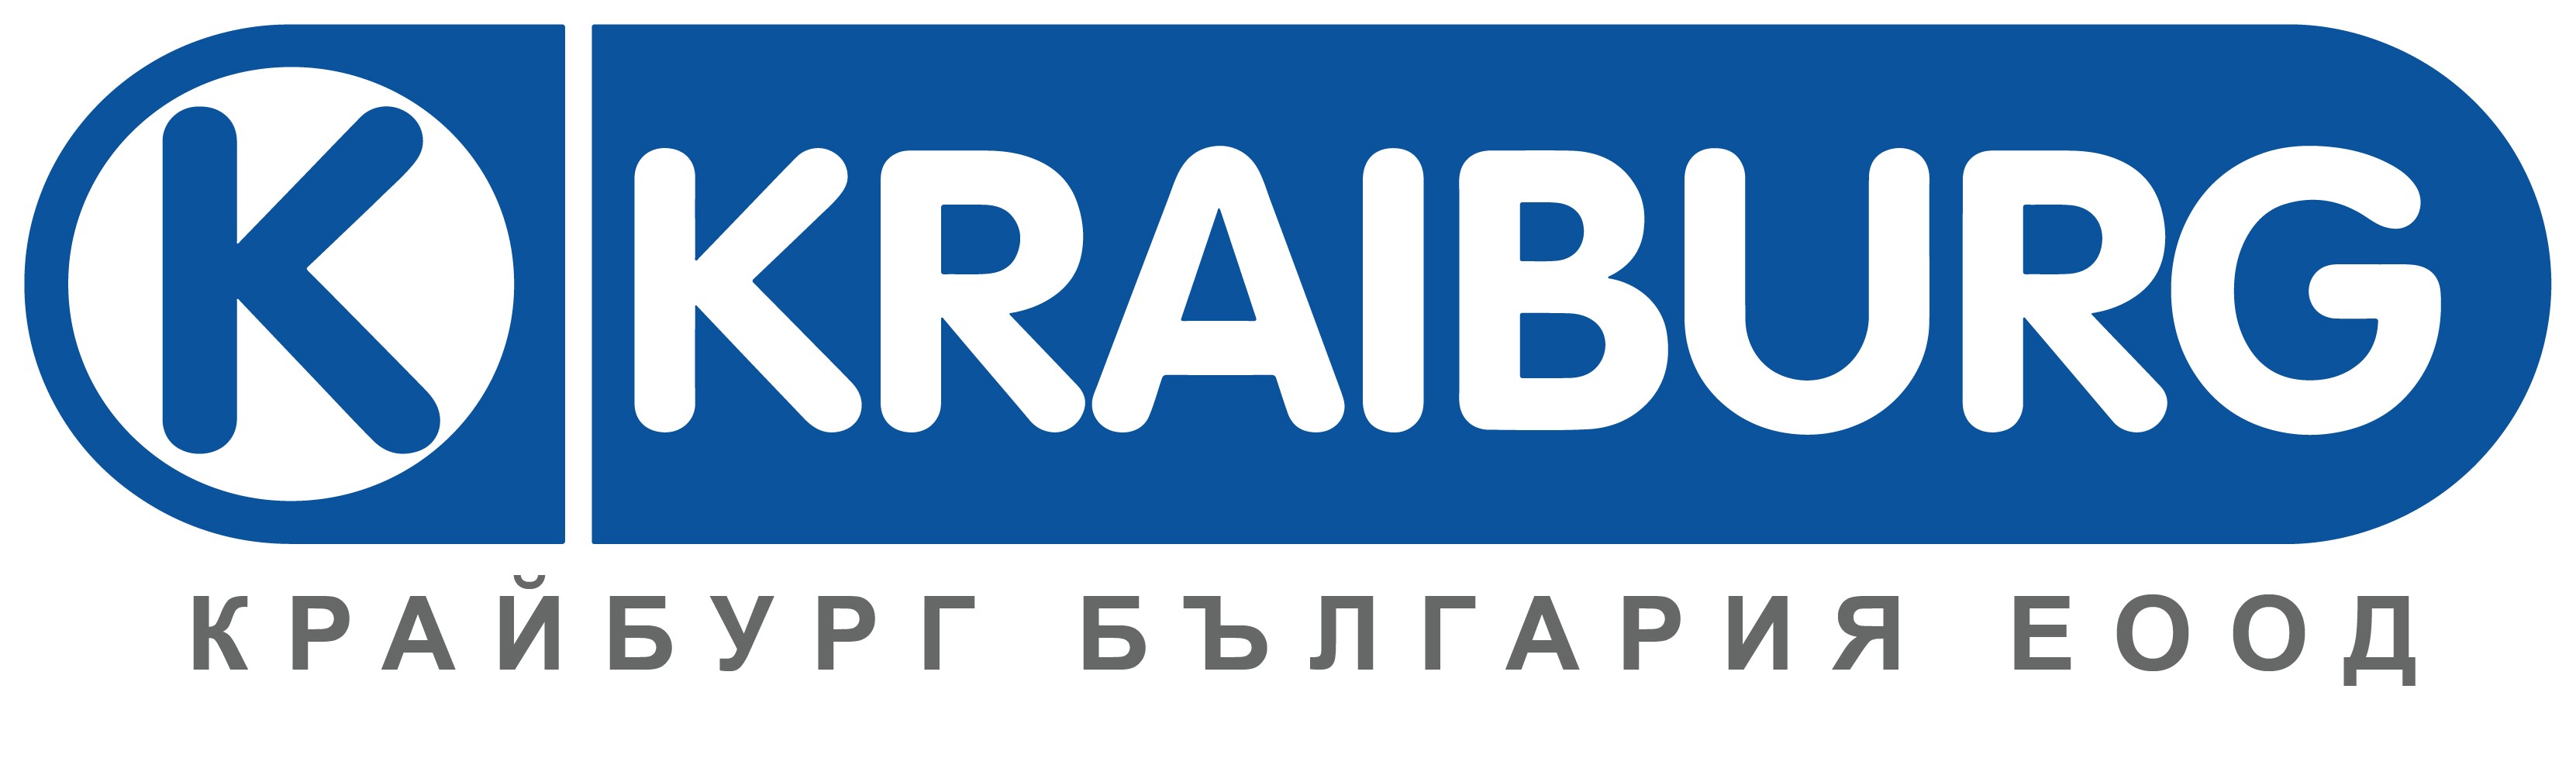 Лого на КРАЙБУРГ БЪЛГАРИЯ EООД